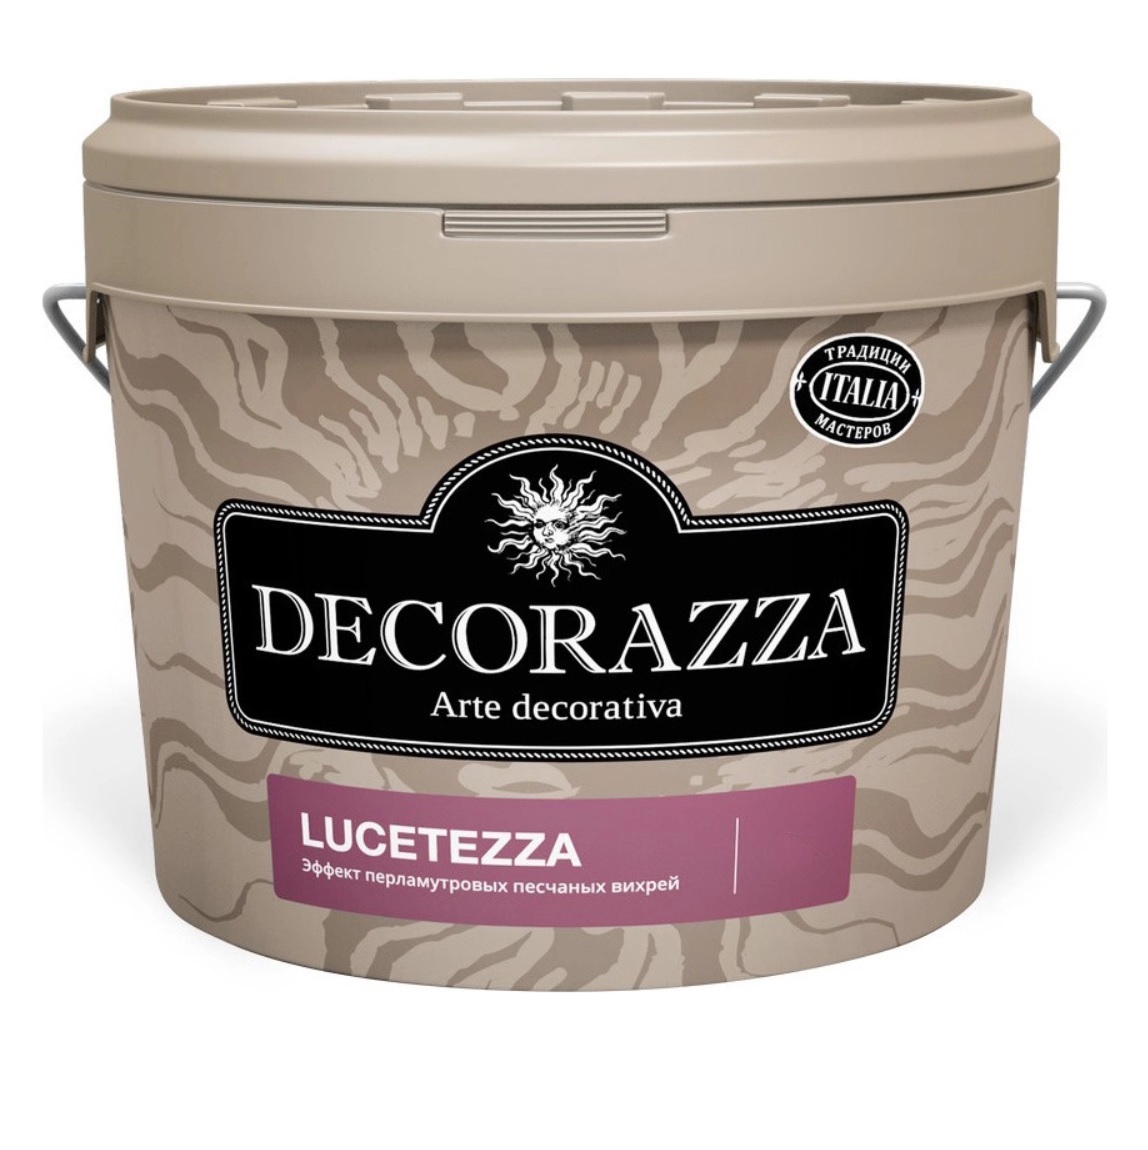 Декоративная краска Decorazza lucetezza база aluminium 5.0кг декоративная краска decorazza seta oro 1 0кг